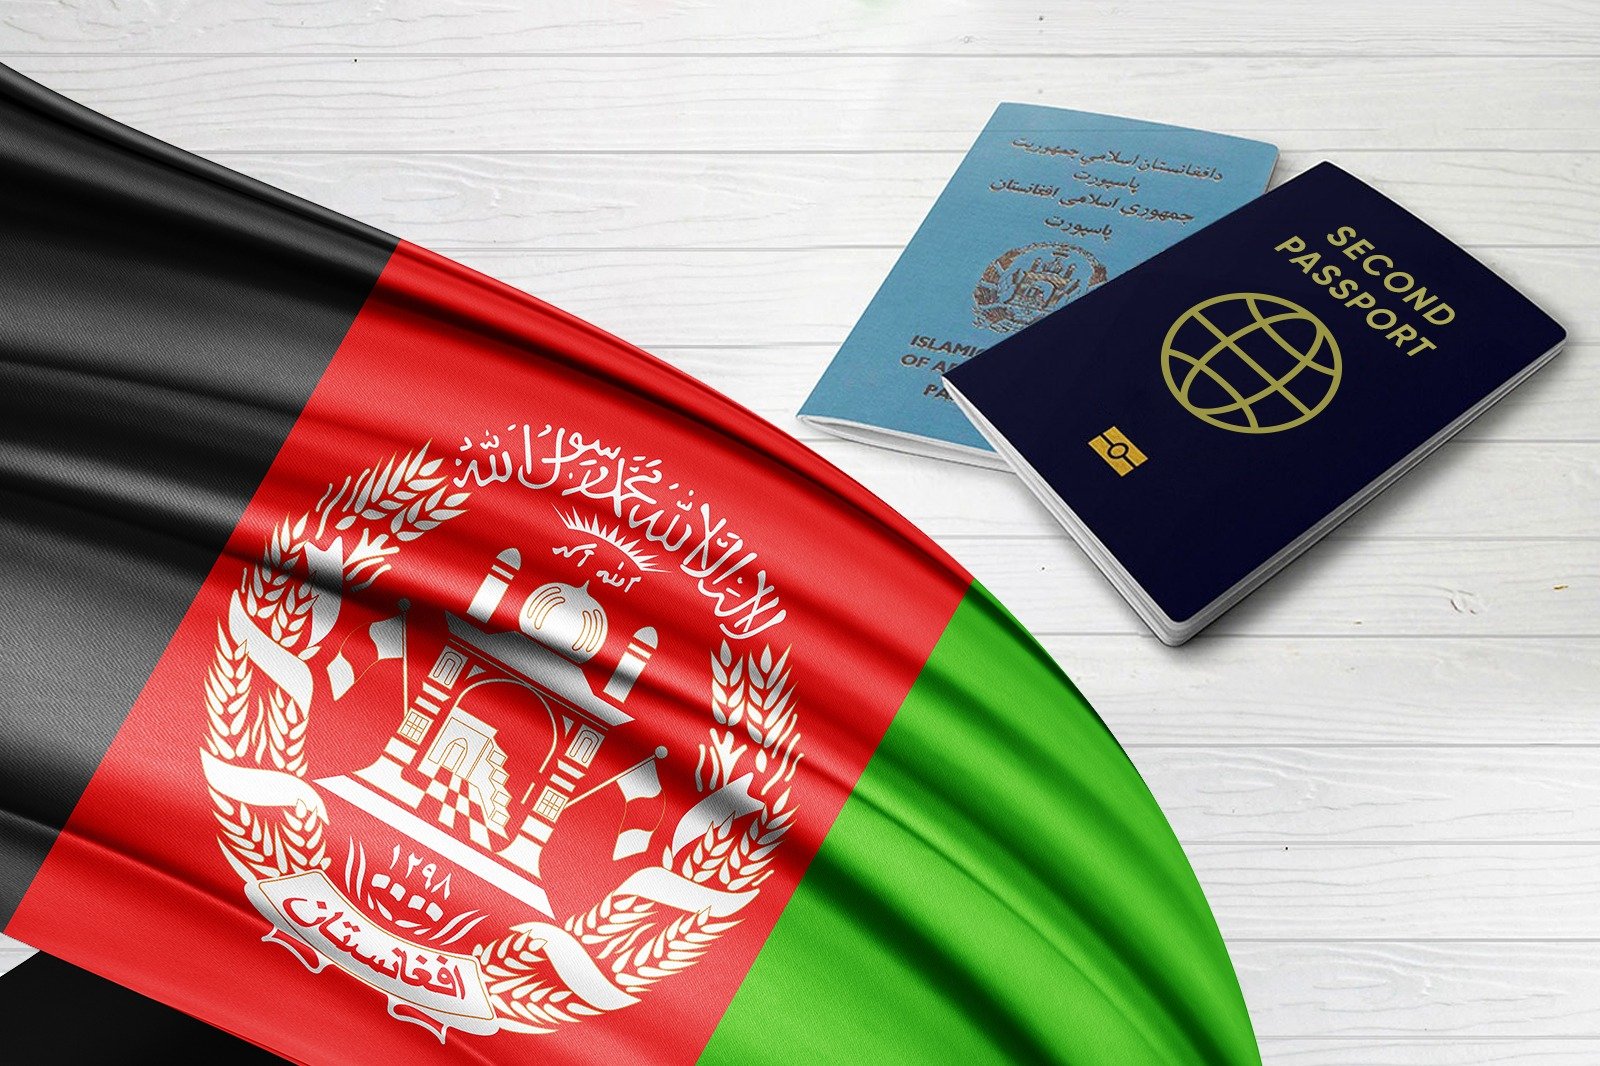 ثبت درخواست شهروندی از طریق سرمایه گذاری توسط اتباع افغانستان